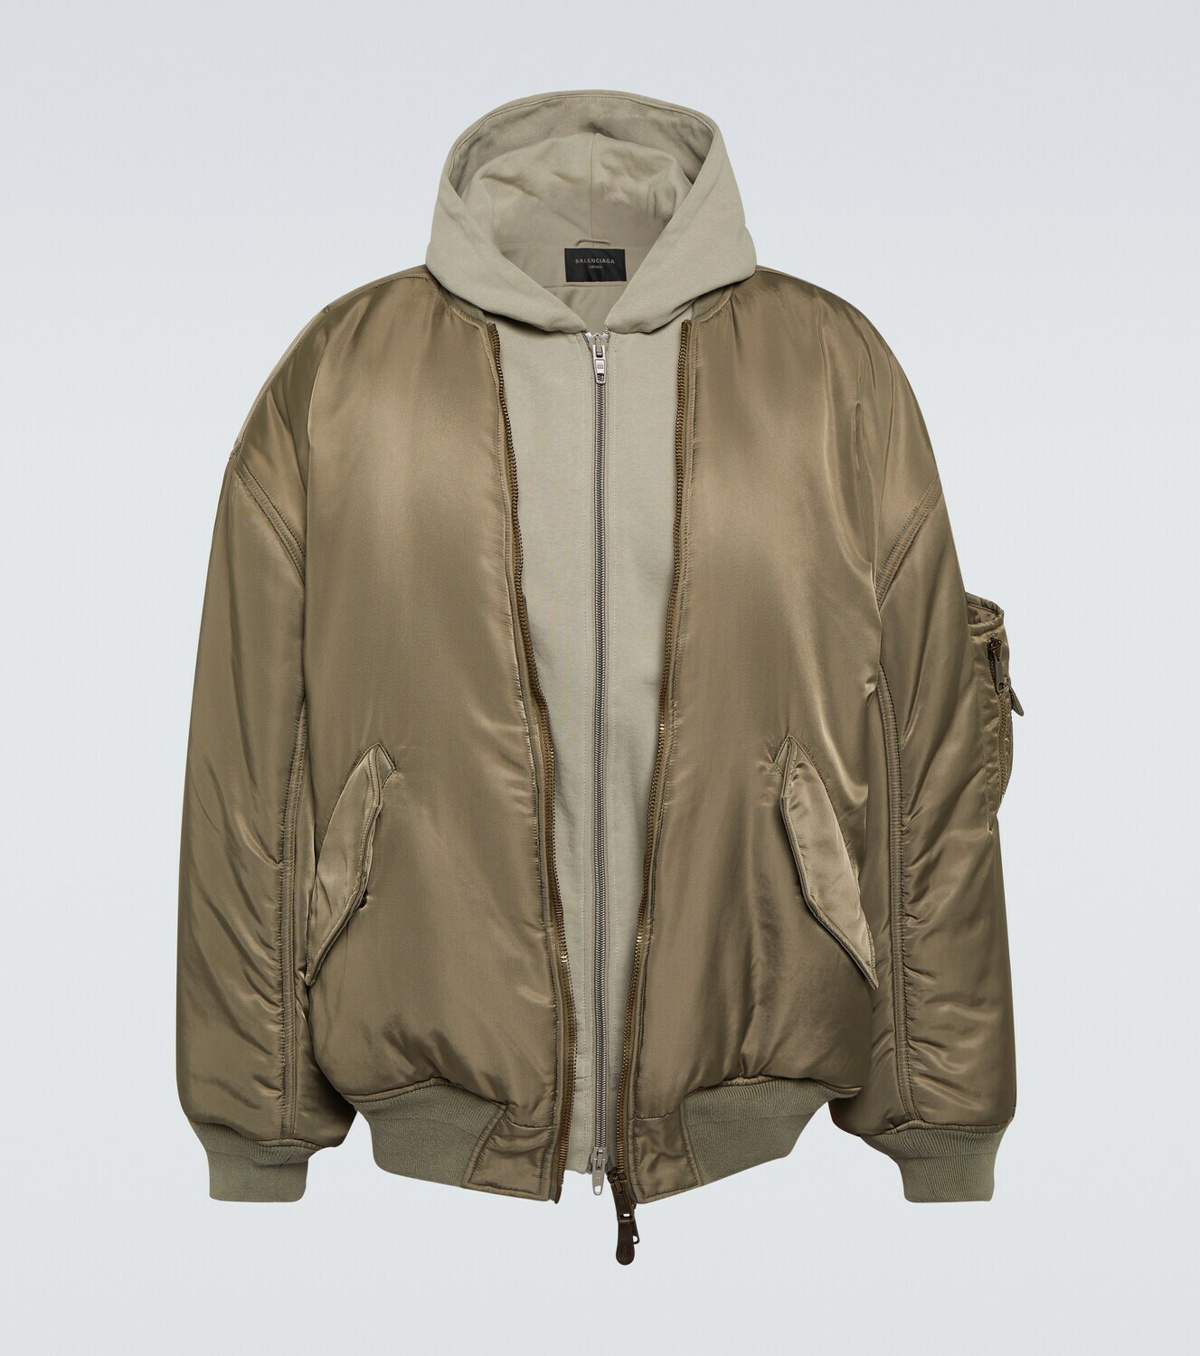 Balenciaga Hooded nylon bomber jacket